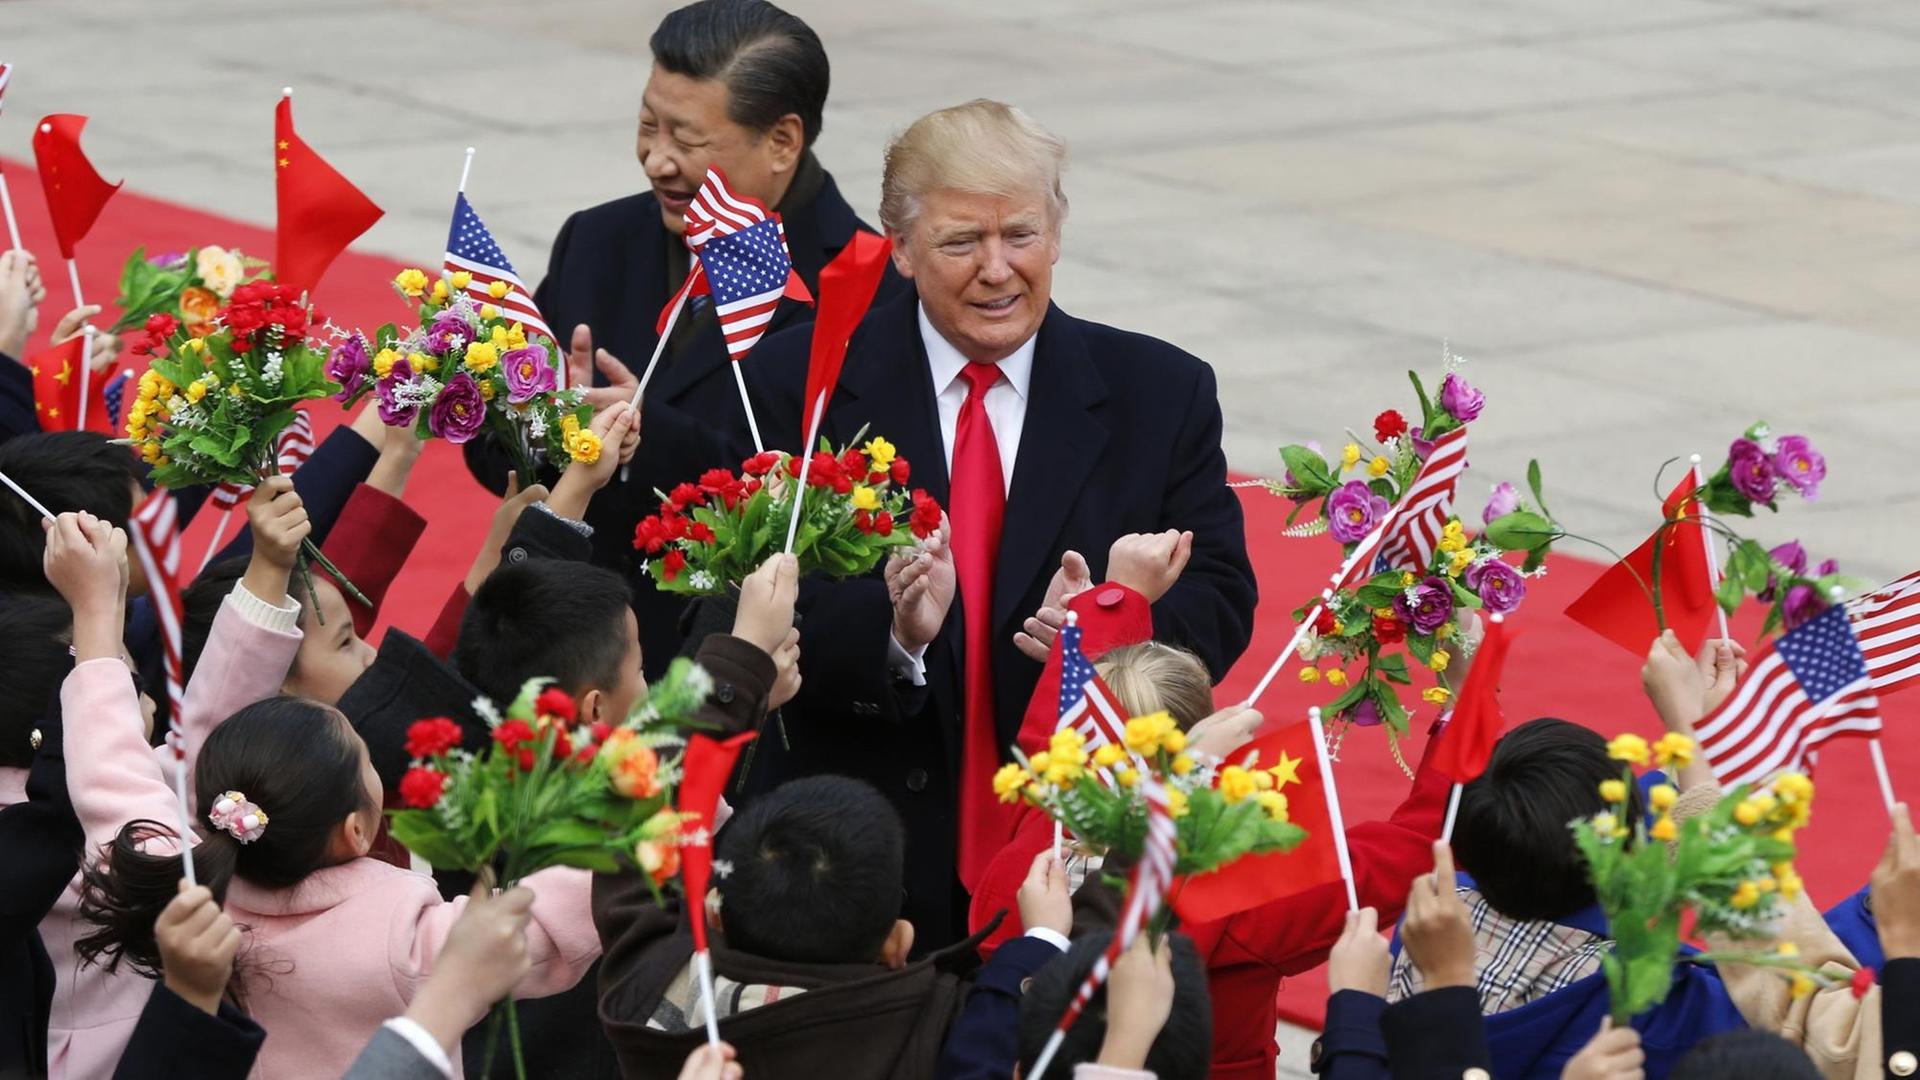 Donald Trump (r.) und Xi Jinping werden von Blumen und Flaggen schwenkenden Kindern begrüßt.